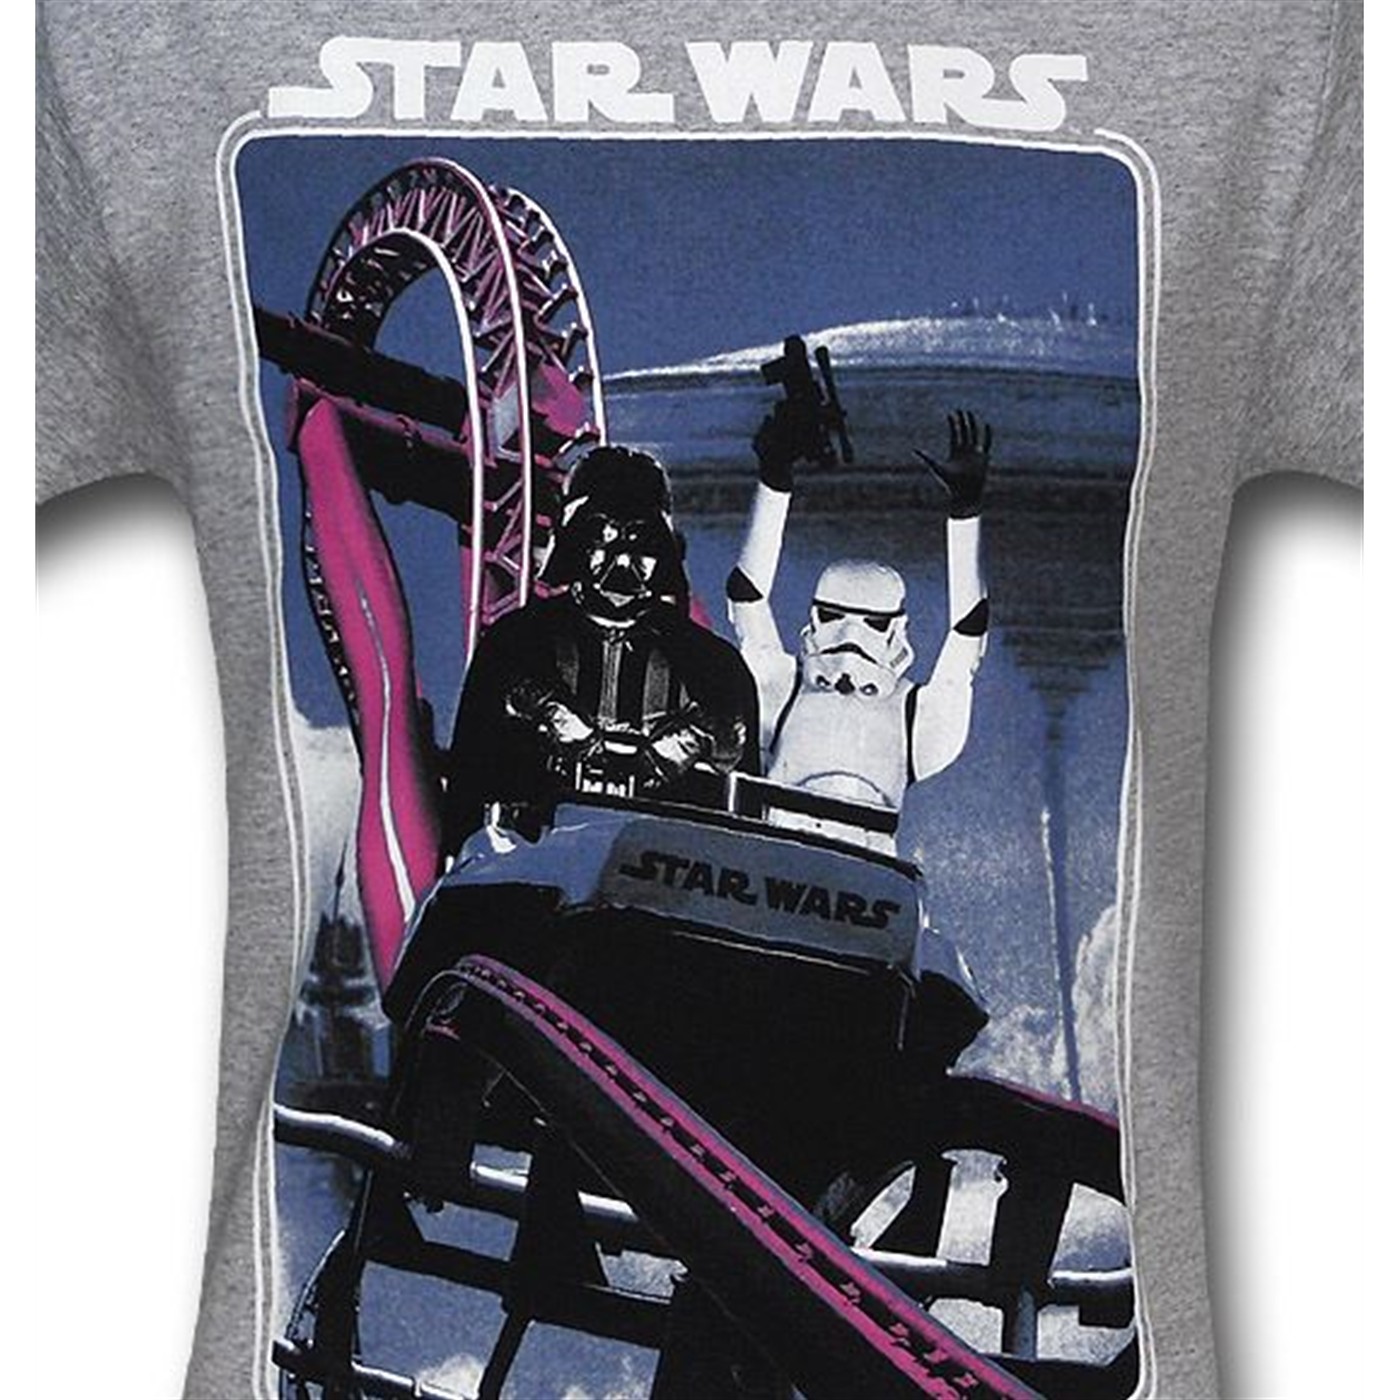 Star Wars Vader Stormtrooper Coaster T-Shirt